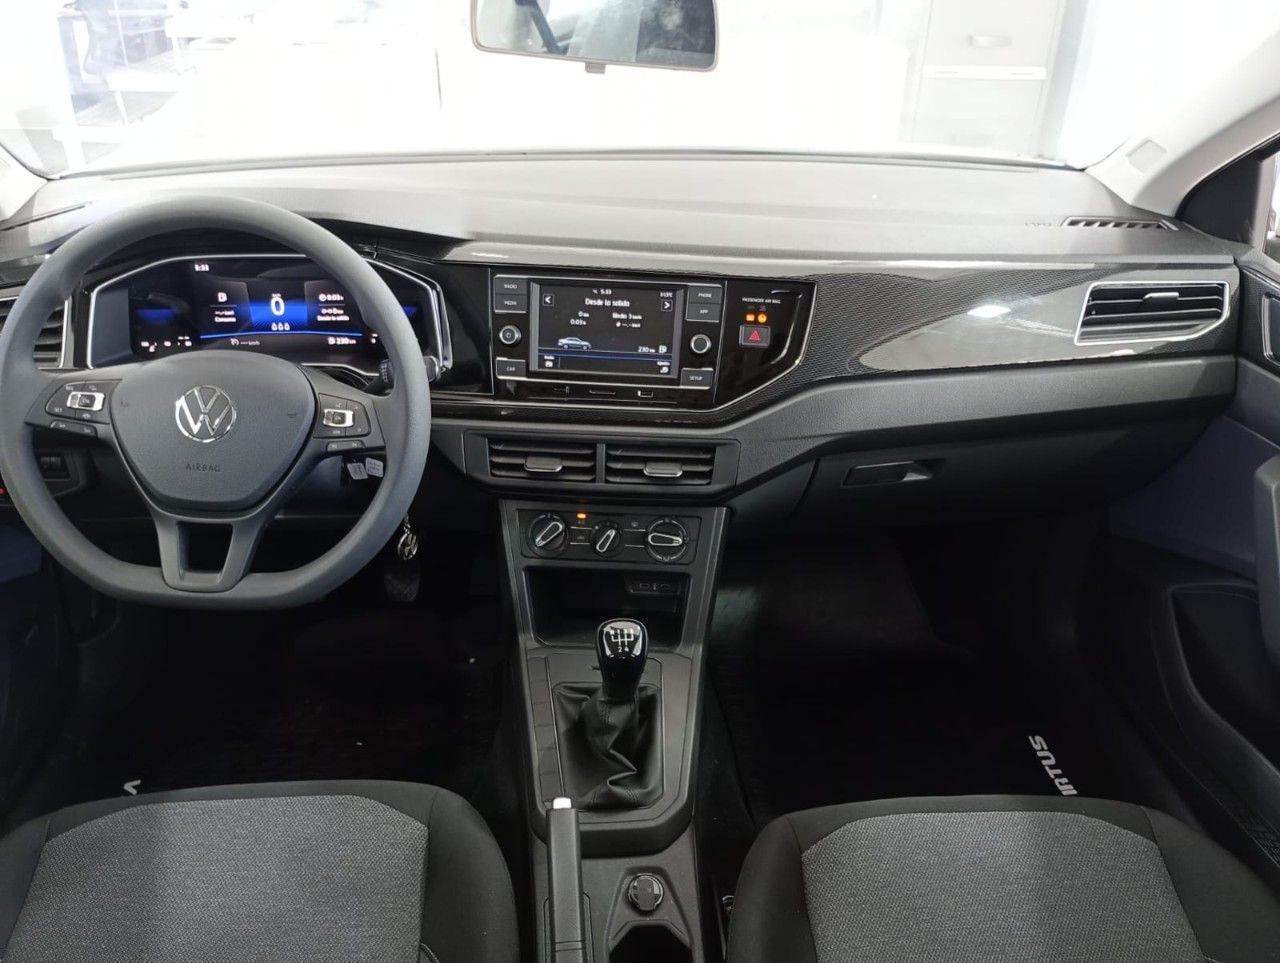 Volkswagen Virtus Nuevo en Mendoza, deRuedas